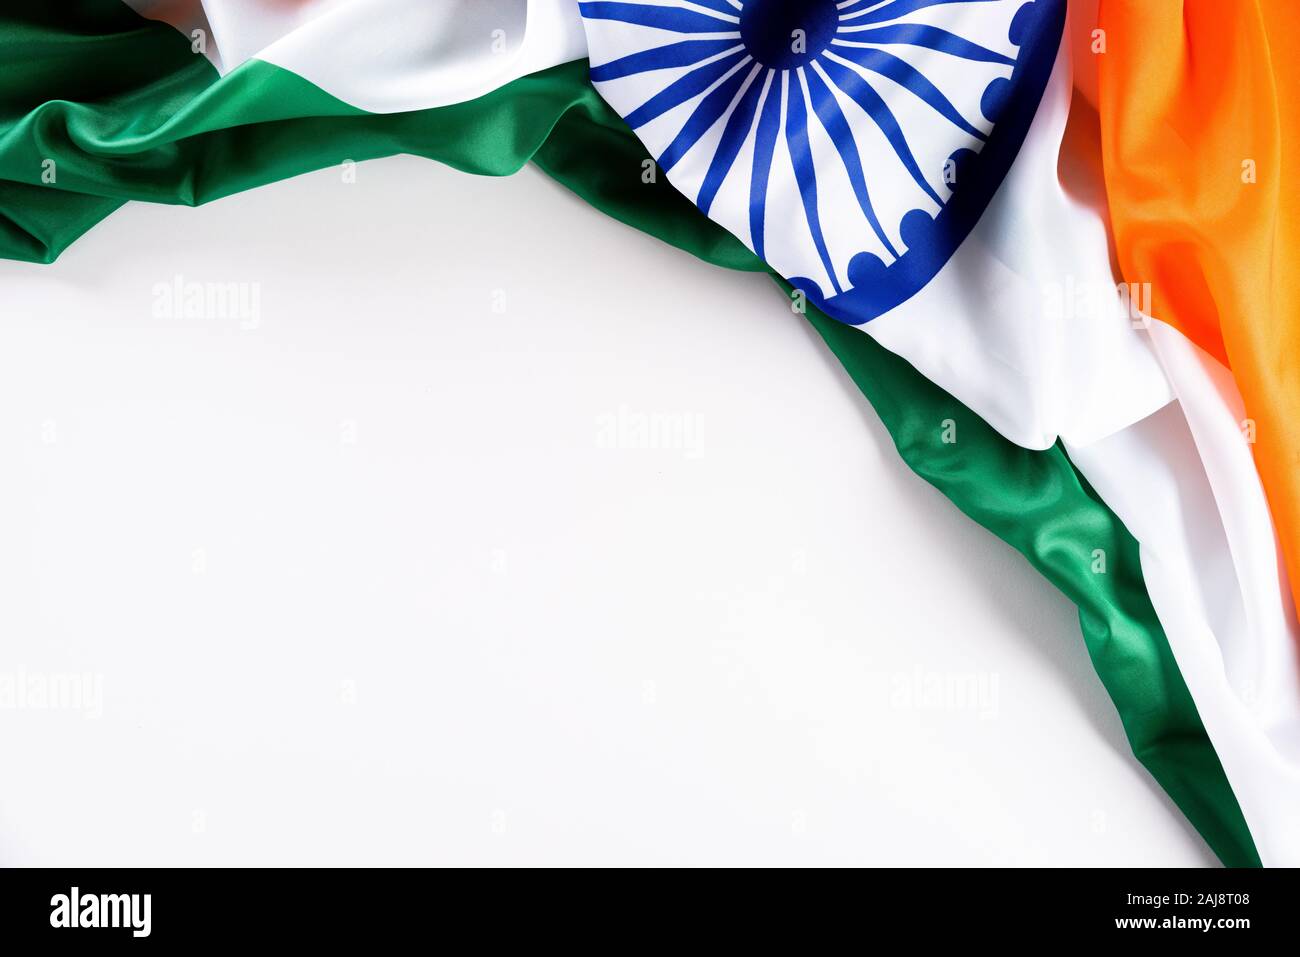 Fête de la République indienne concept. Drapeau indien avec le texte République Heureuse journée contre un fond blanc. 26 janvier. Banque D'Images